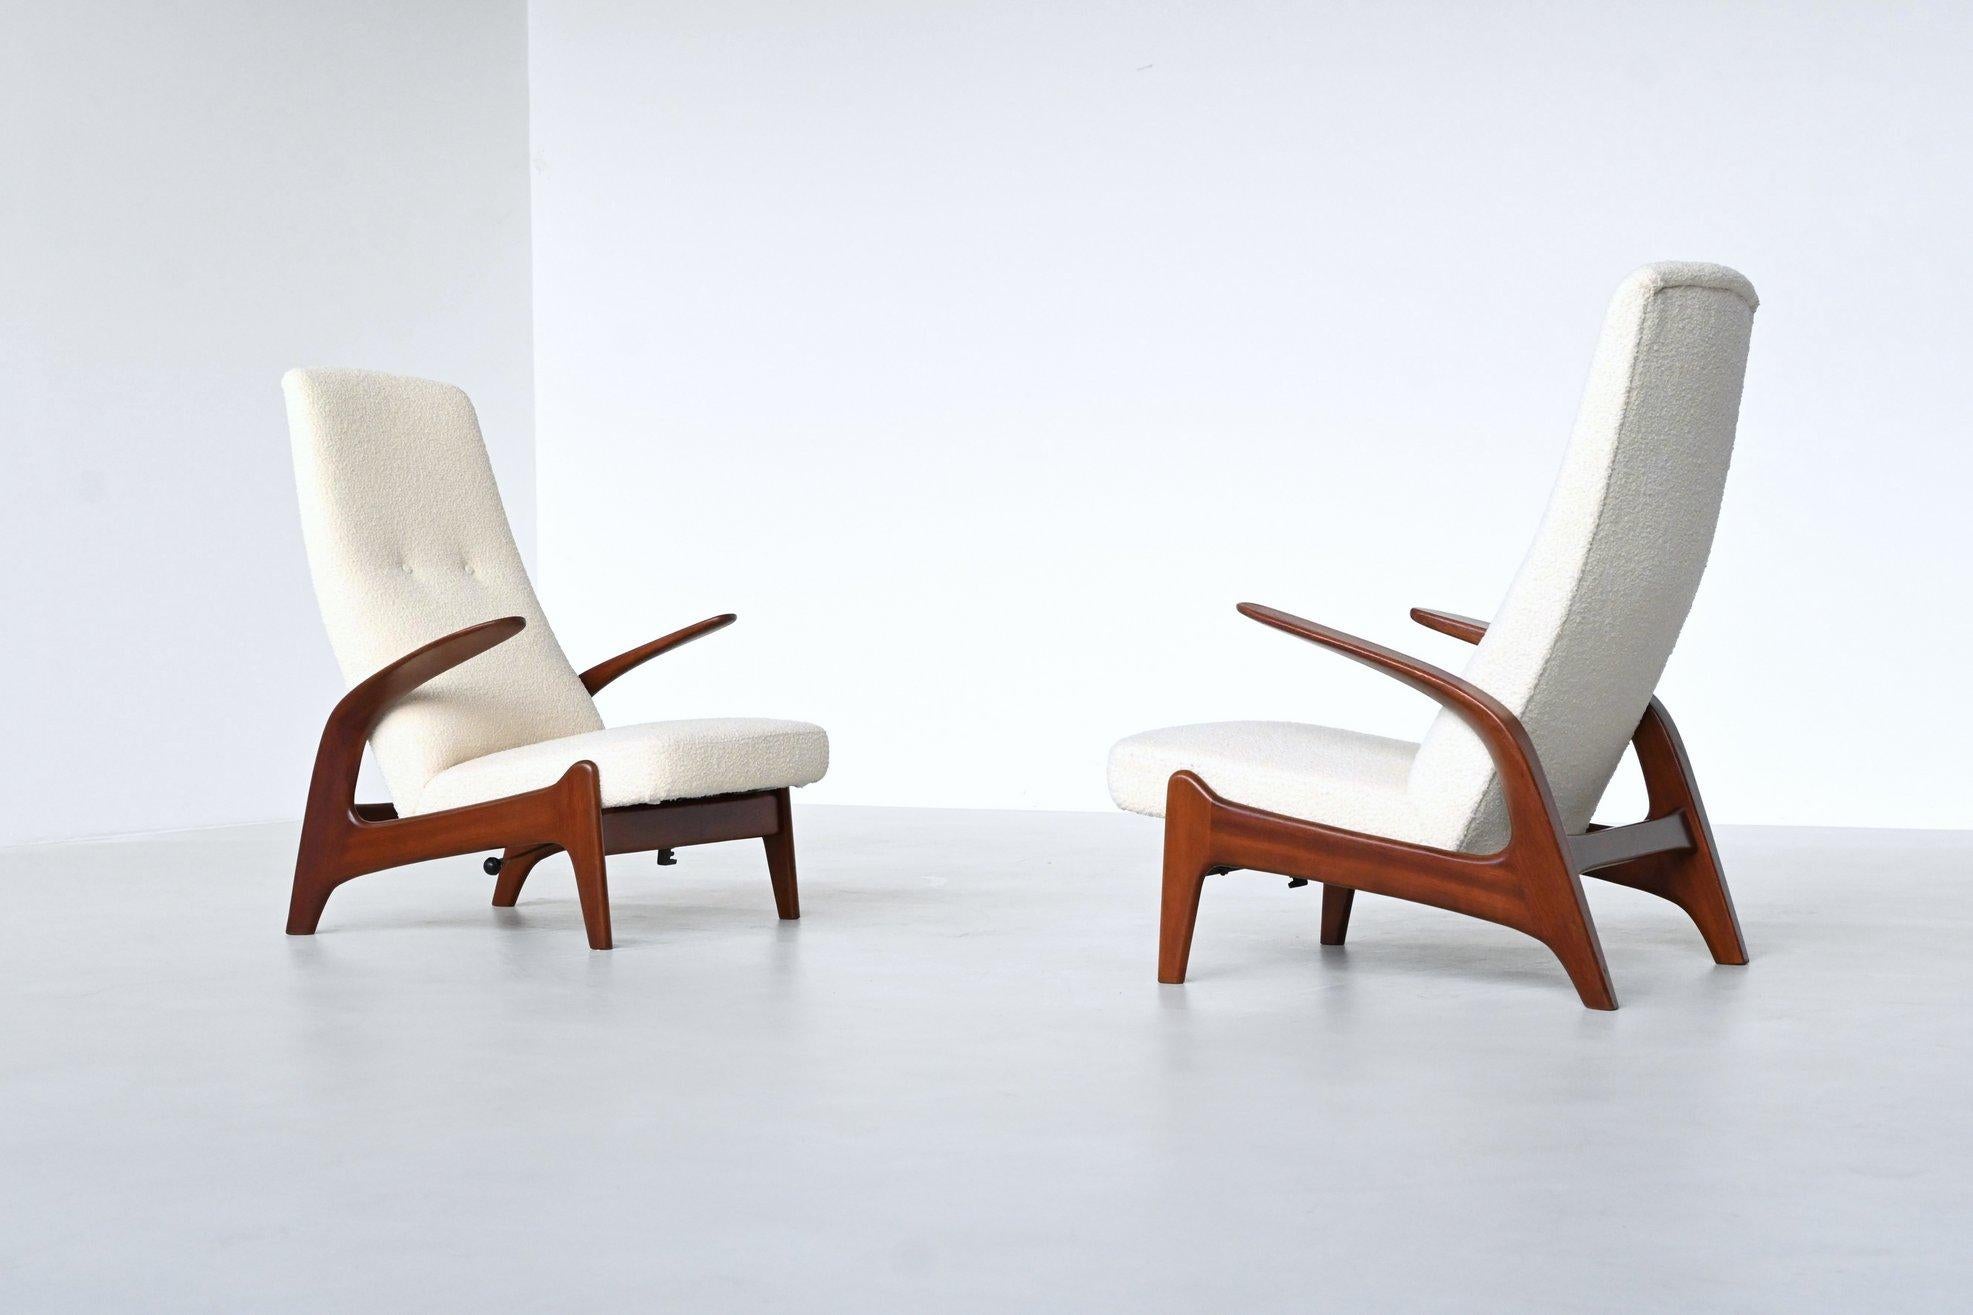 Paire de chaises longues aux formes fantastiques, modèle Rock 'n Rest, conçu en Norvège par Rolf Rastad et Adolf Relling et fabriqué au Royaume-Uni par Gimson and Slater, 1960. Ces chaises sculpturales à haut dossier sont dotées d'un solide cadre en